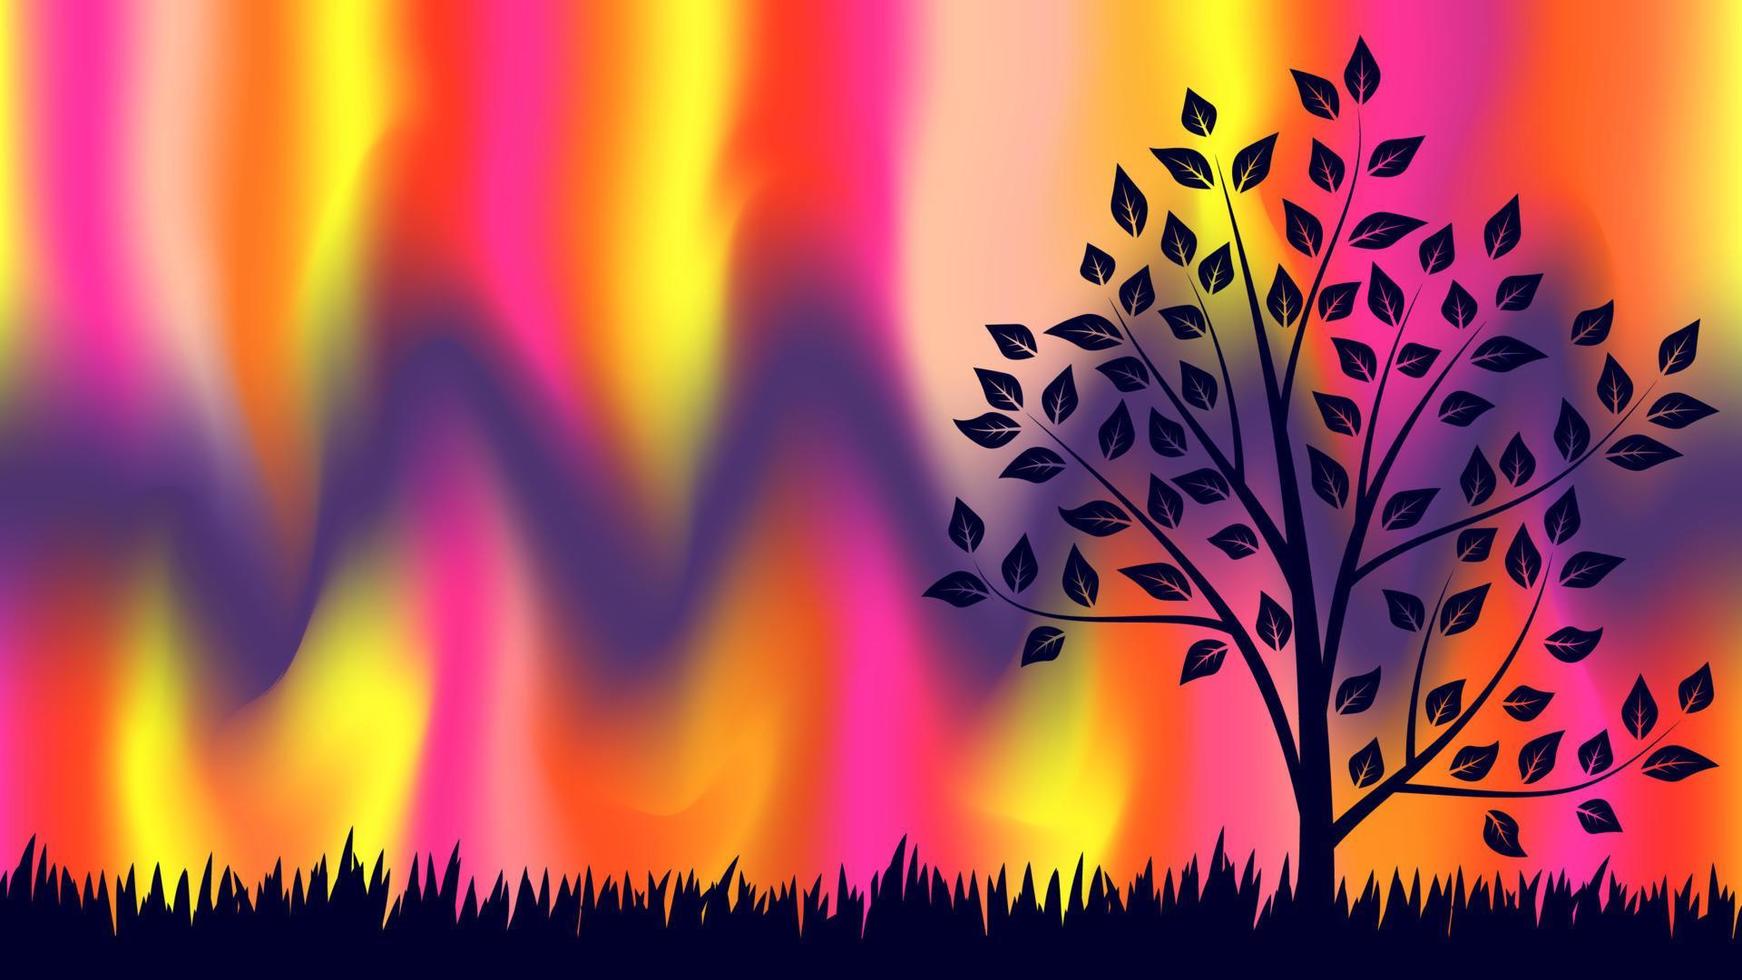 kleurrijke onscherpe achtergrond met gras en boom. moderne abstracte gradiëntkaart. zakelijke affiche. vector